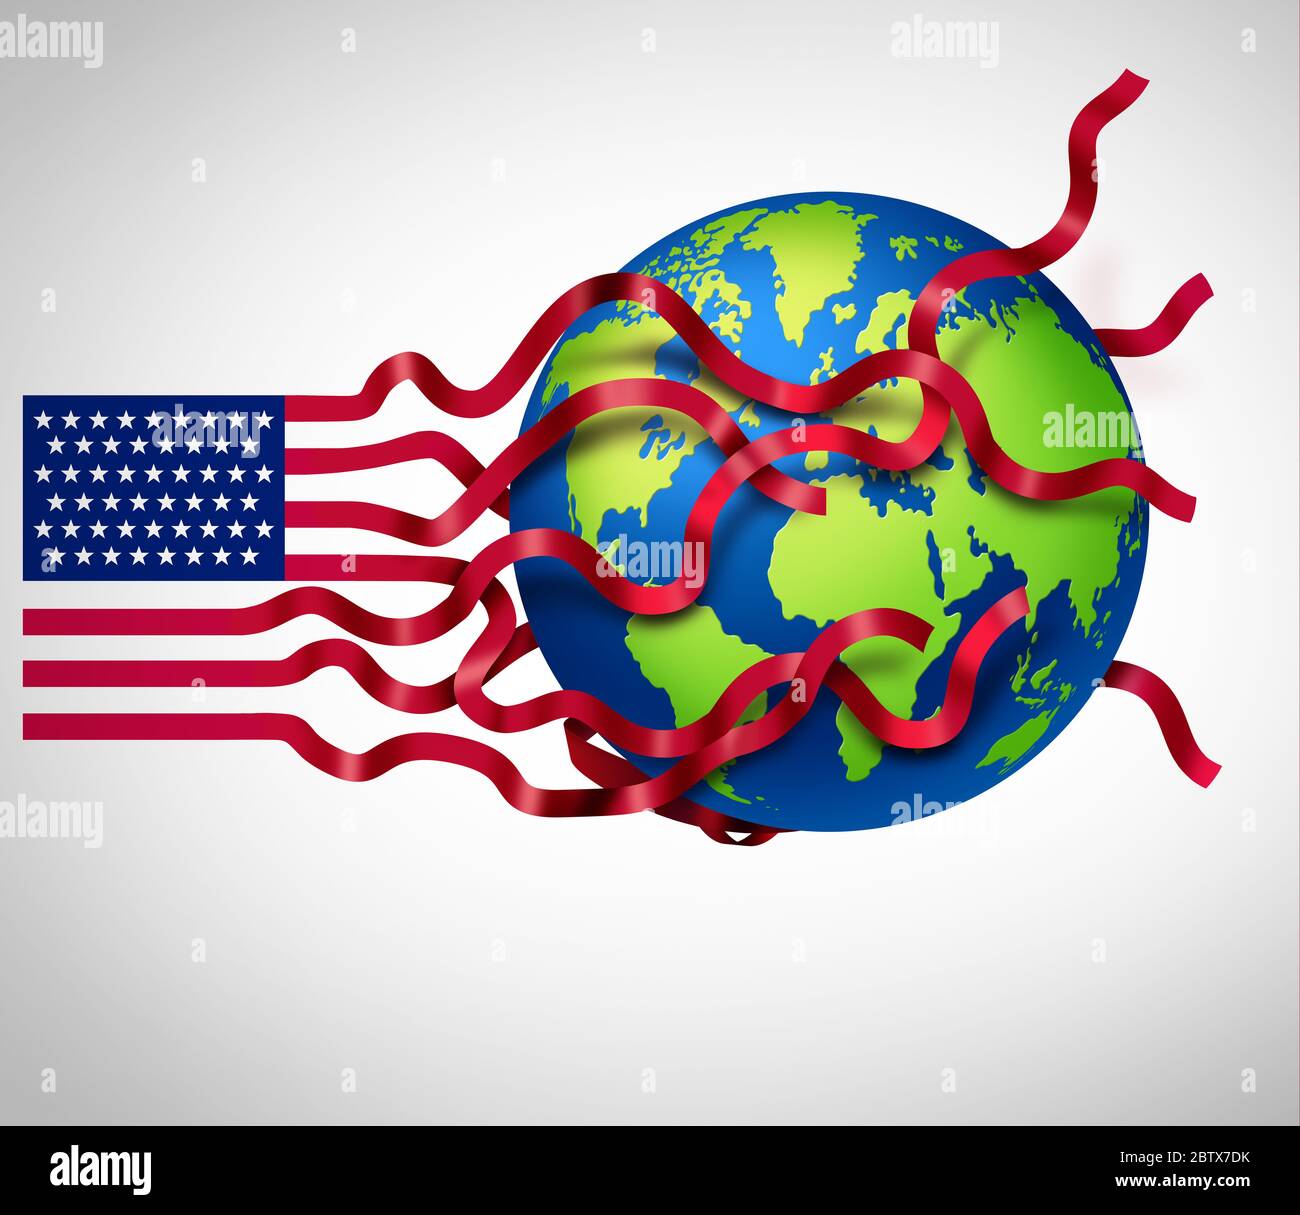 STRATÉGIE mondiale AMÉRICAINE et planification internationale américaine en tant que symbole américain influençant le monde avec des éléments d'illustration 3D. Banque D'Images